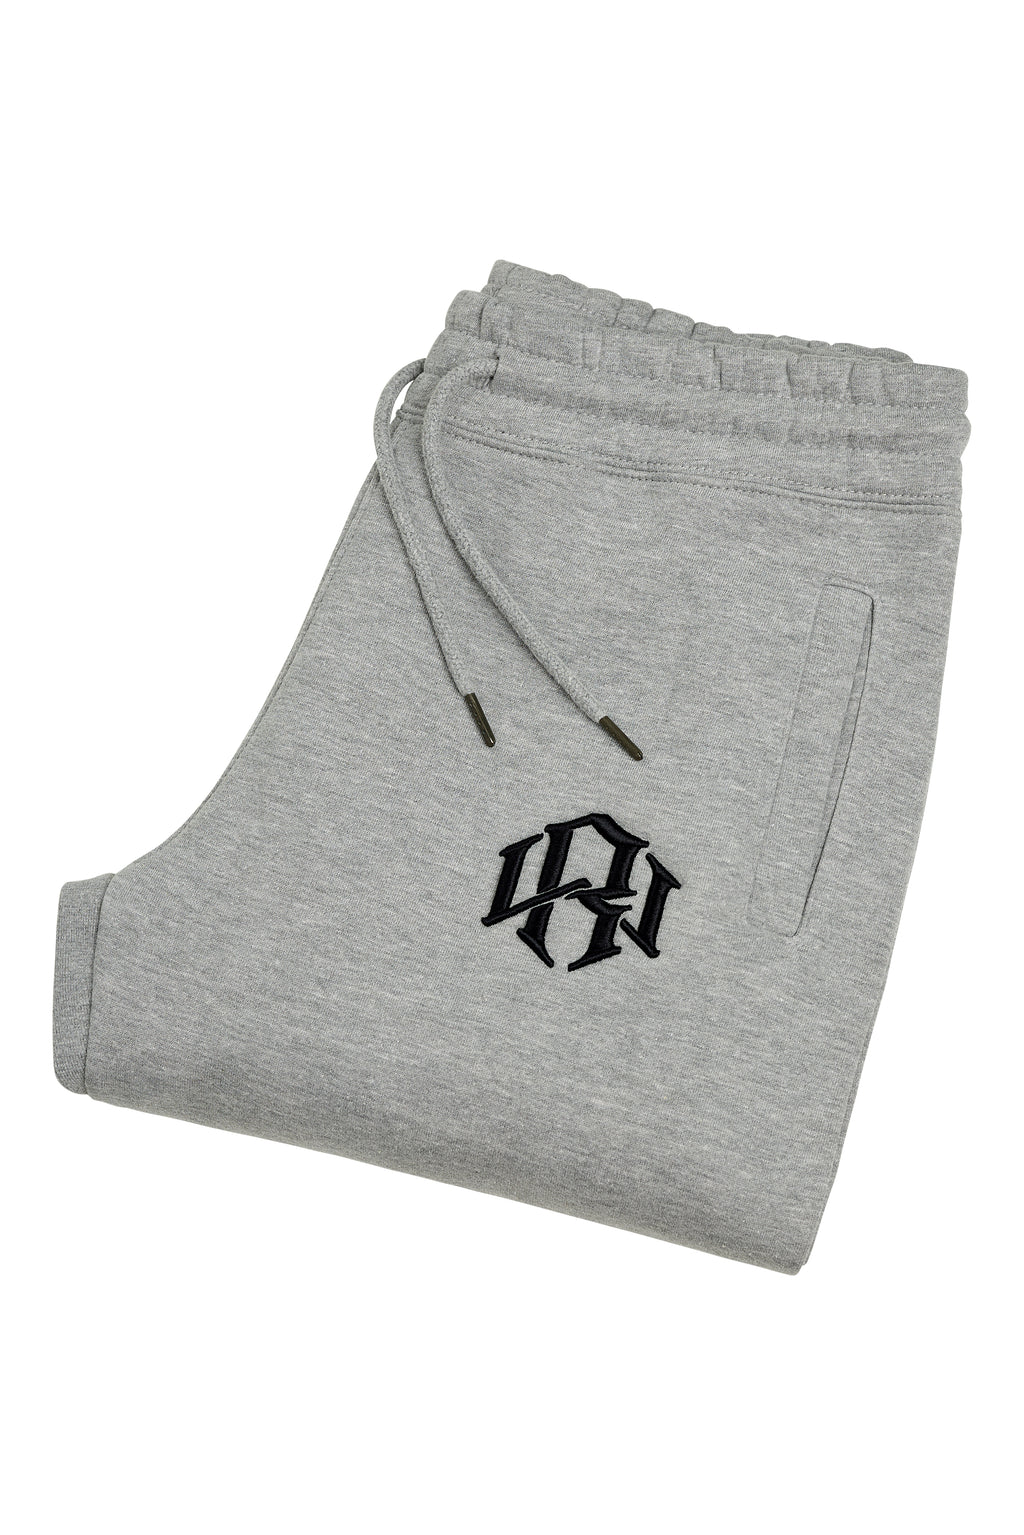 Wear Grey Sweatpants Heavyweight in R.W Logo Heather Renowned 3D